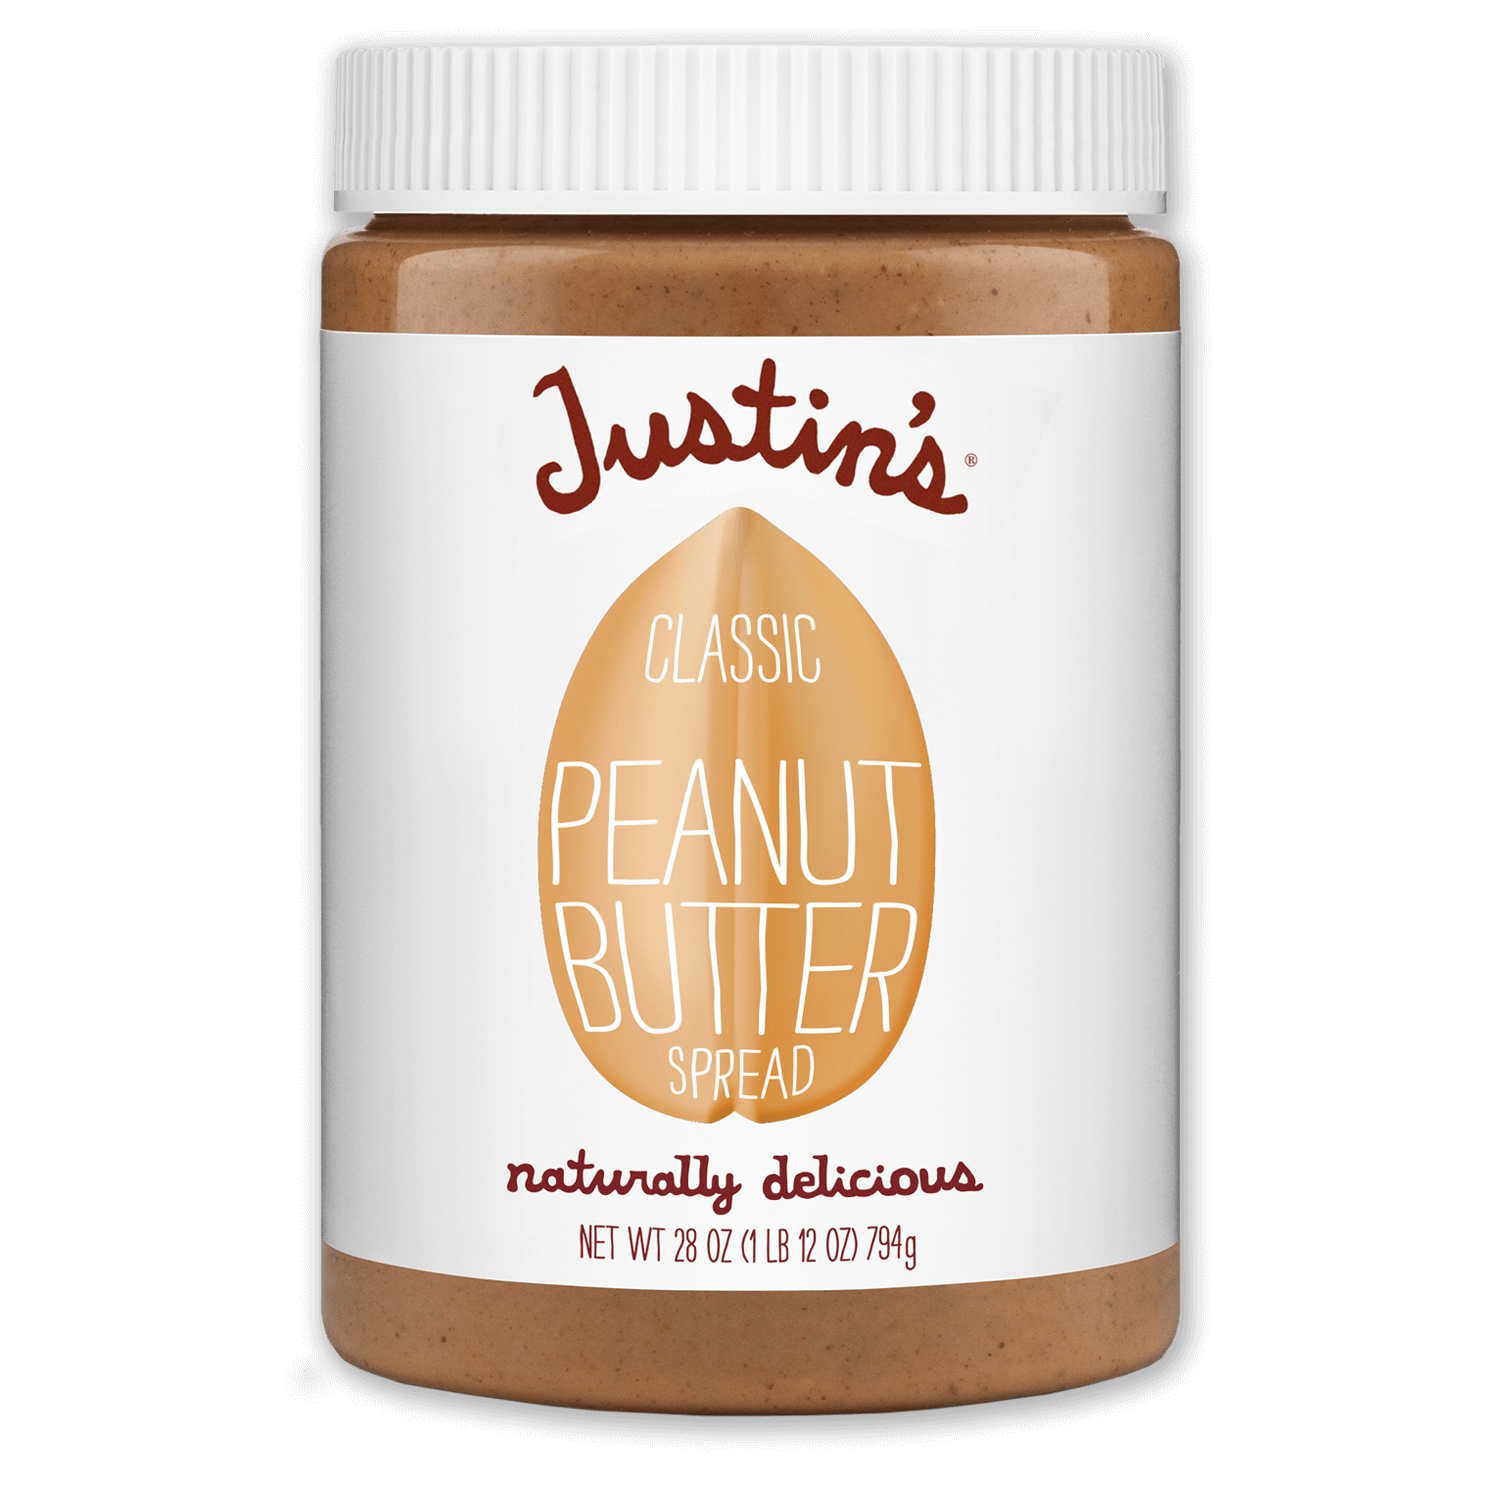 Justin's Classic Peanut Butter Spread jar 28 oz.